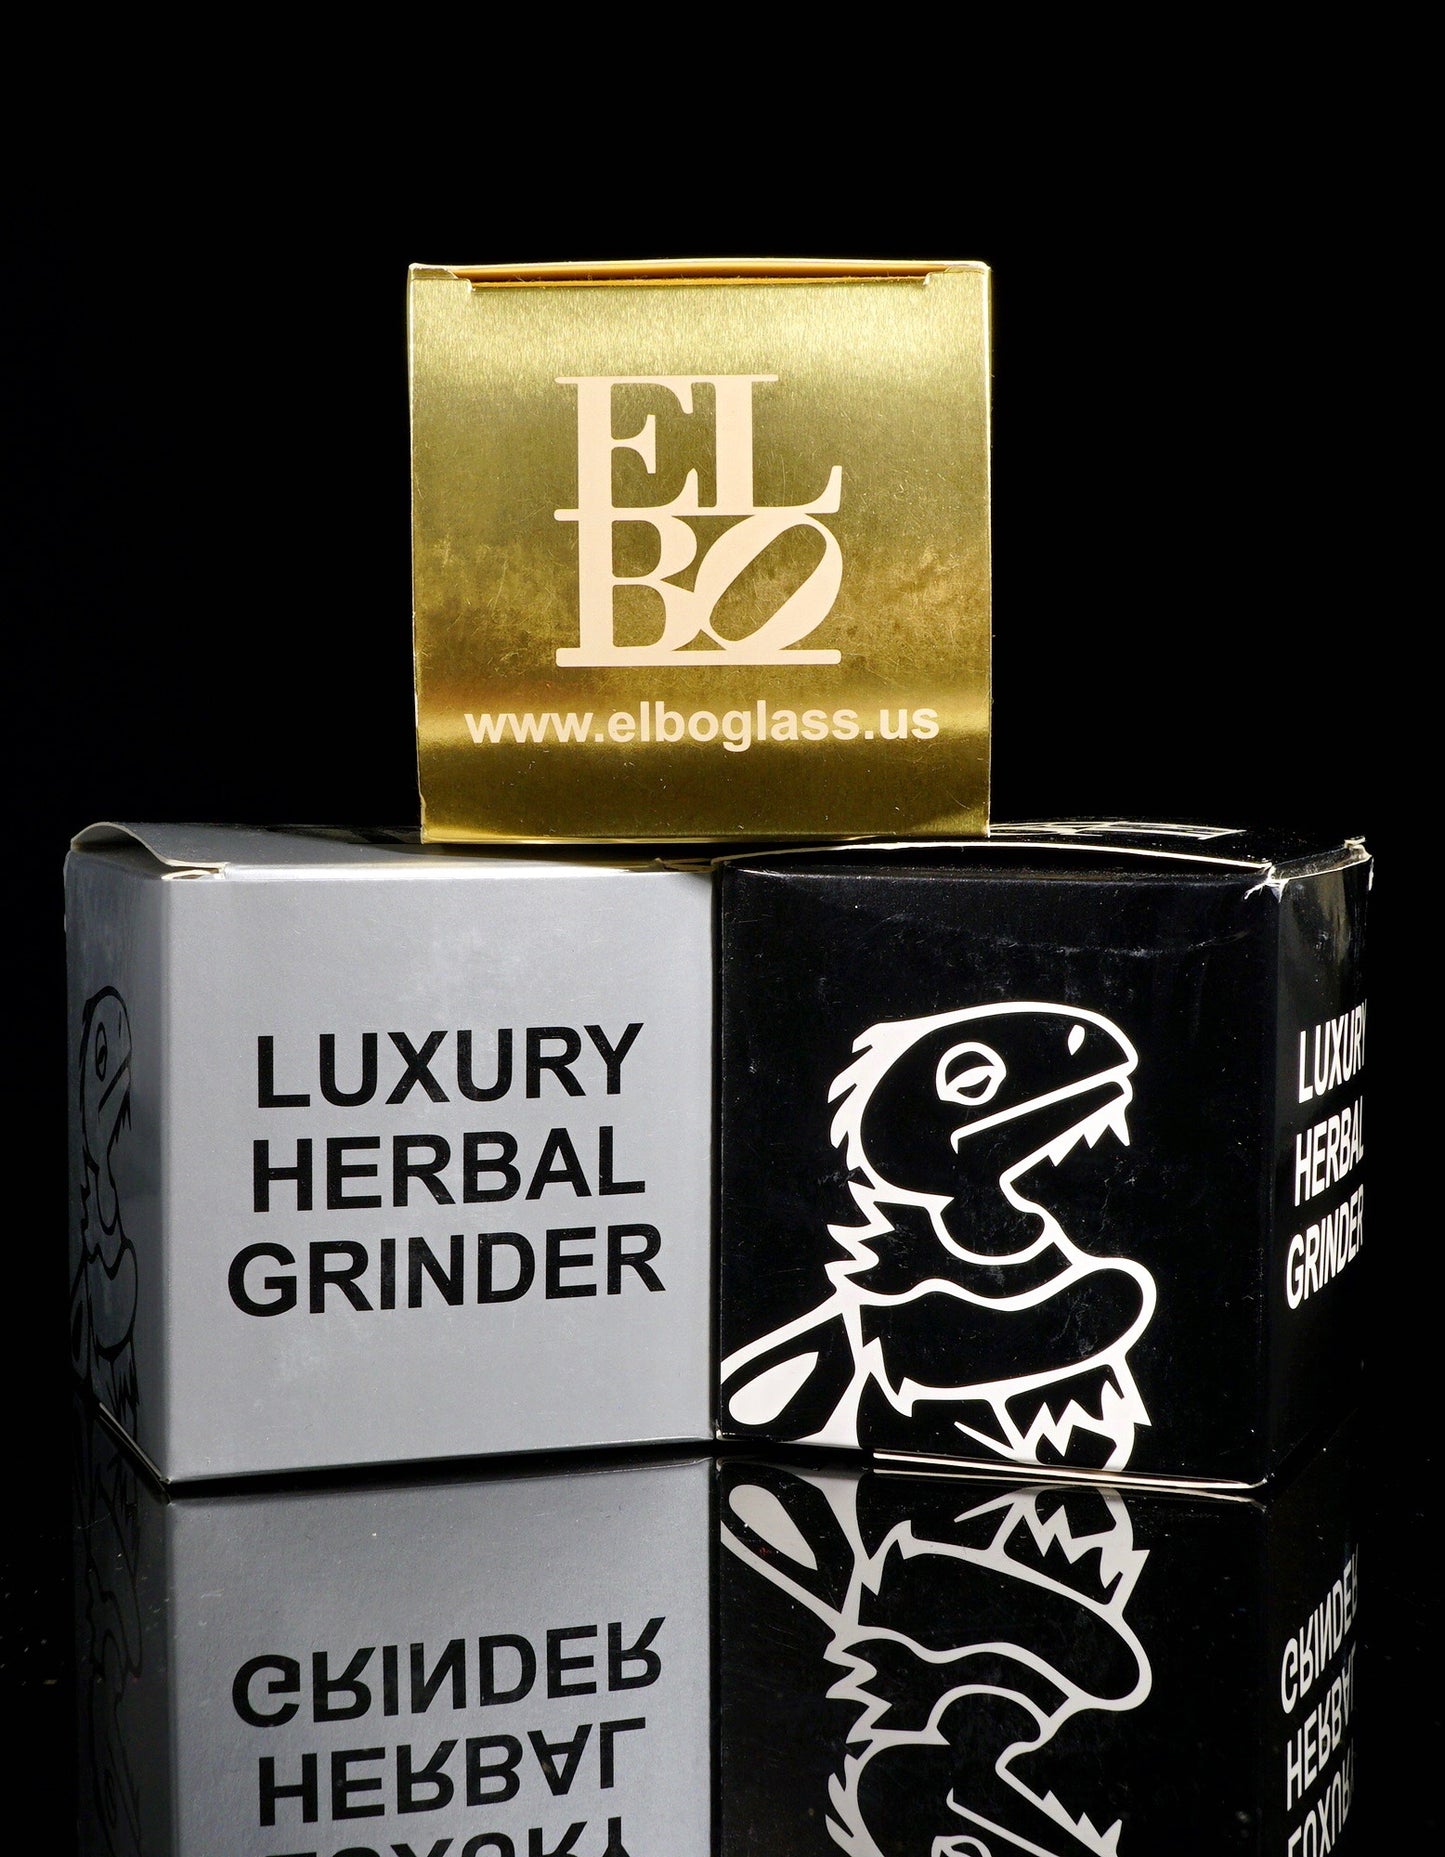 Luxury Herbal Grinder (silver / gold / black)